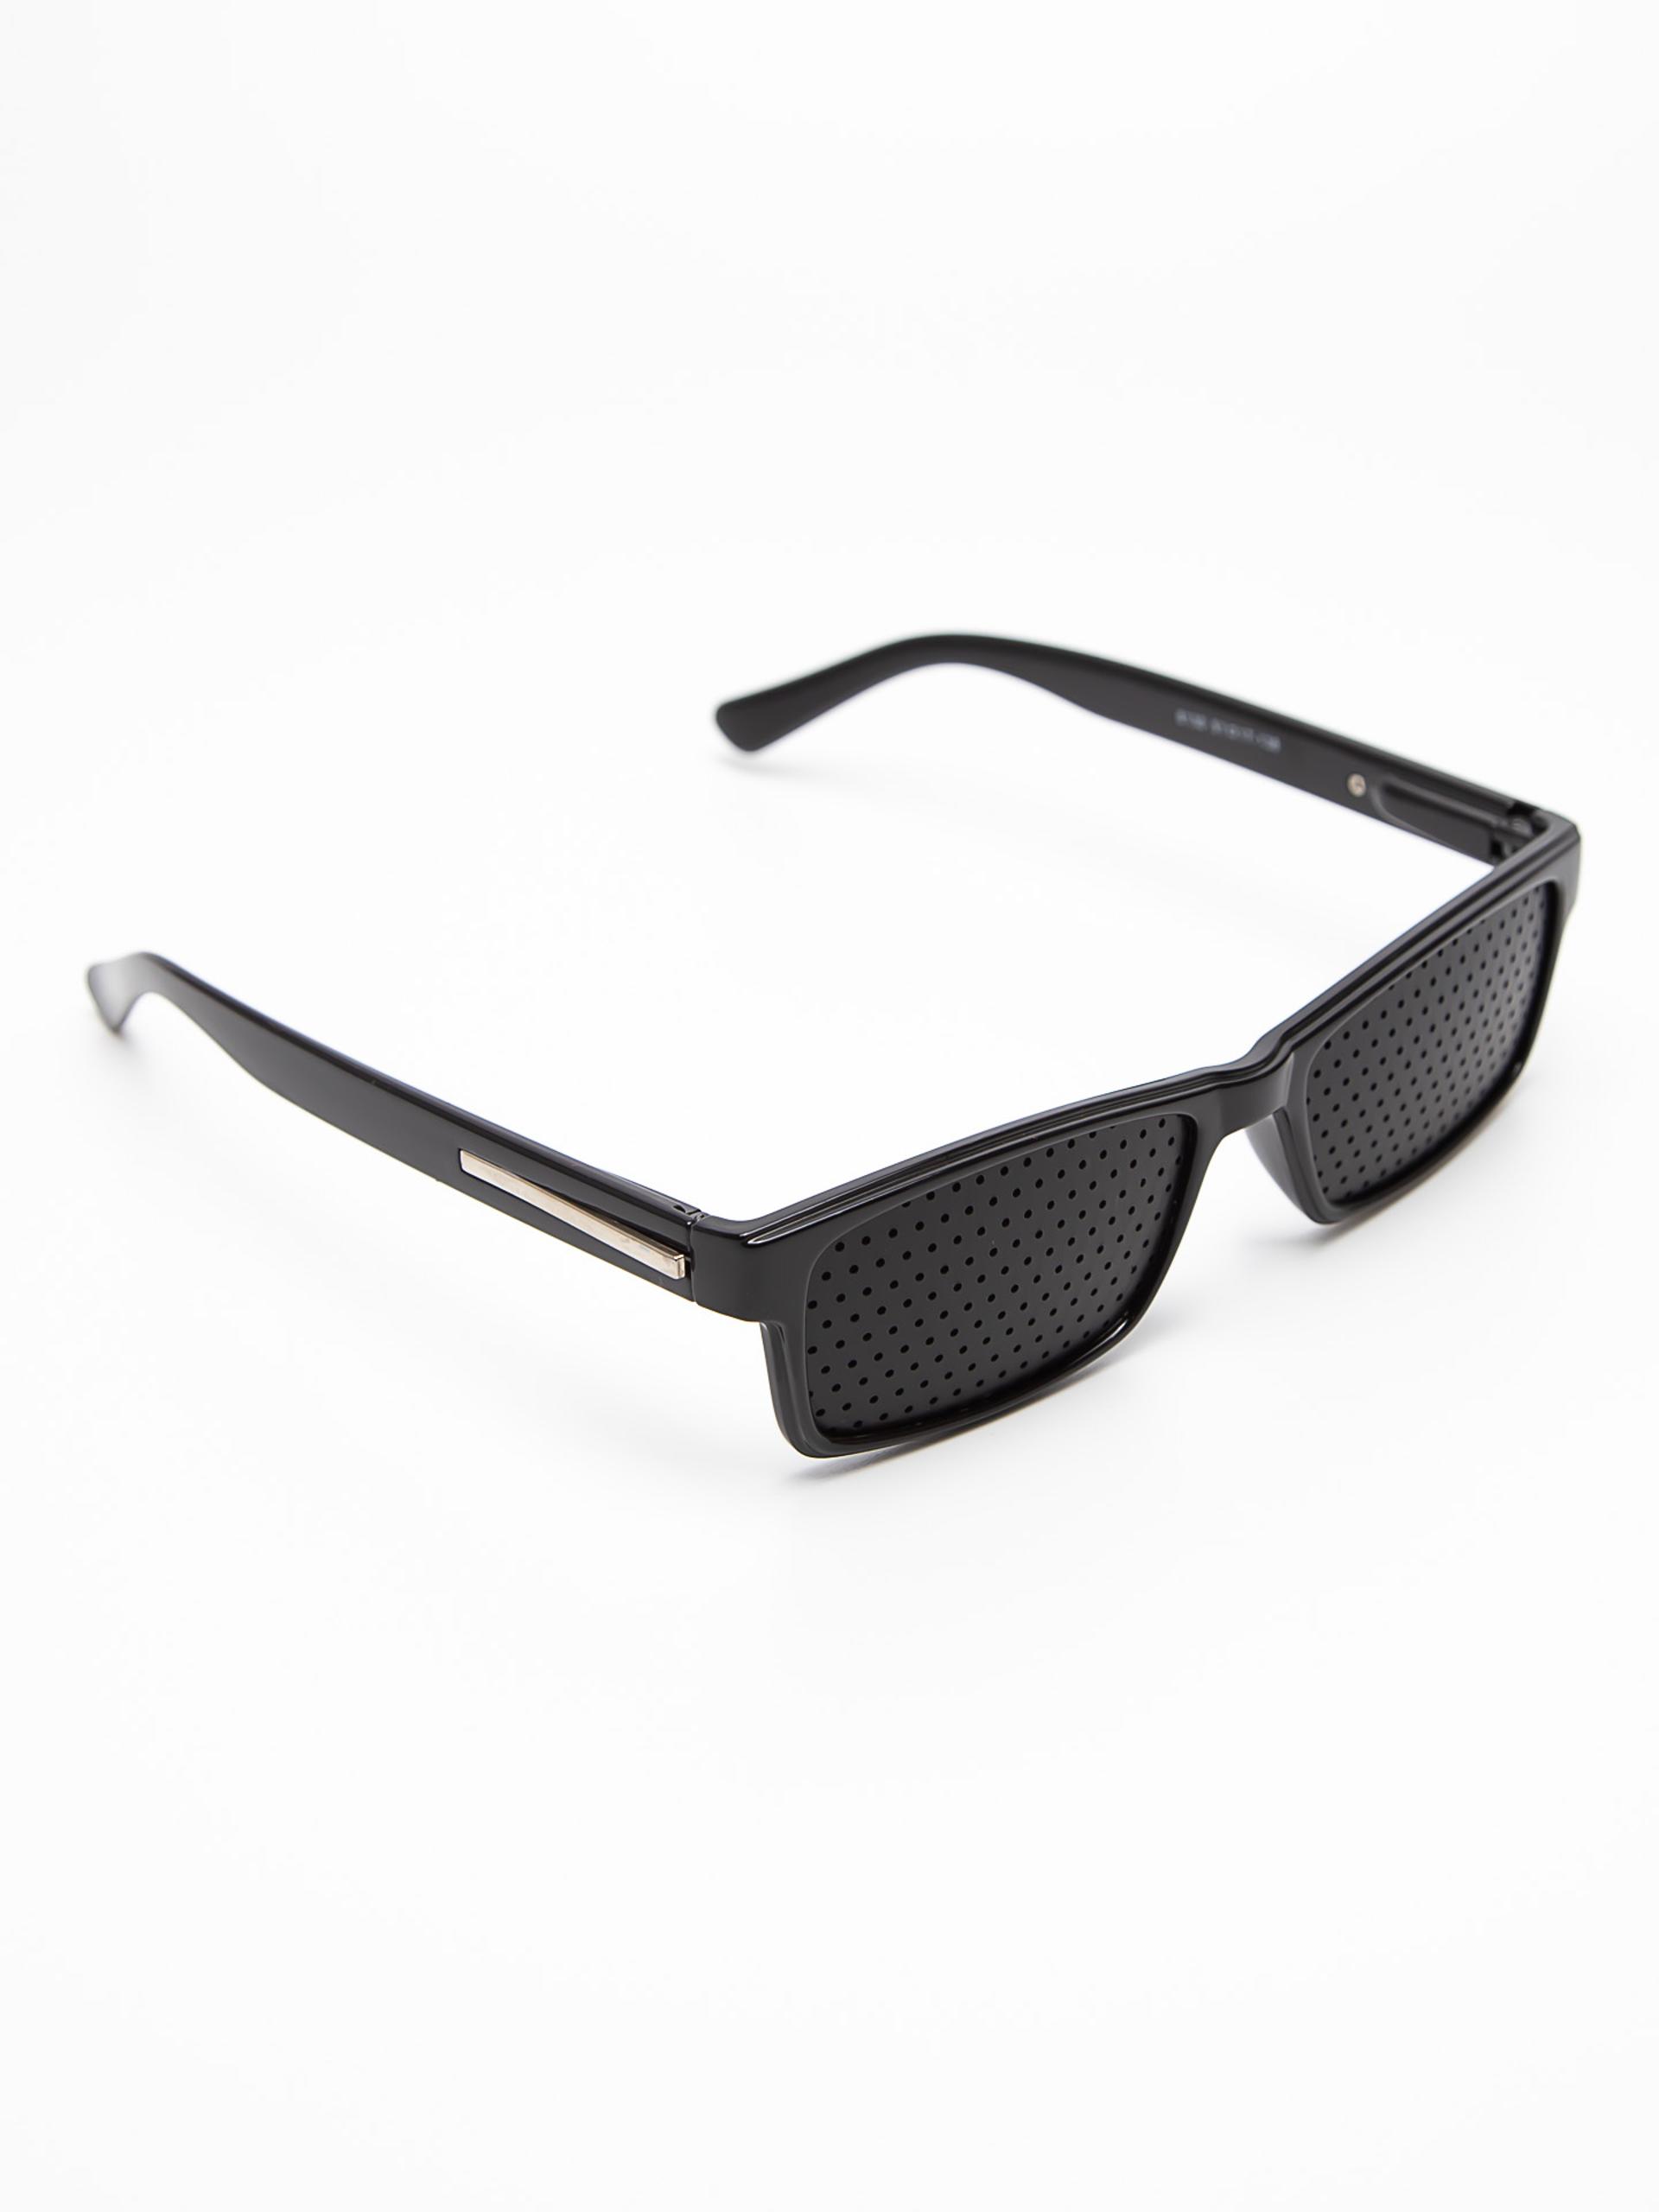 Mahsulot - “Тренажёрные очки для восстановления зрения”